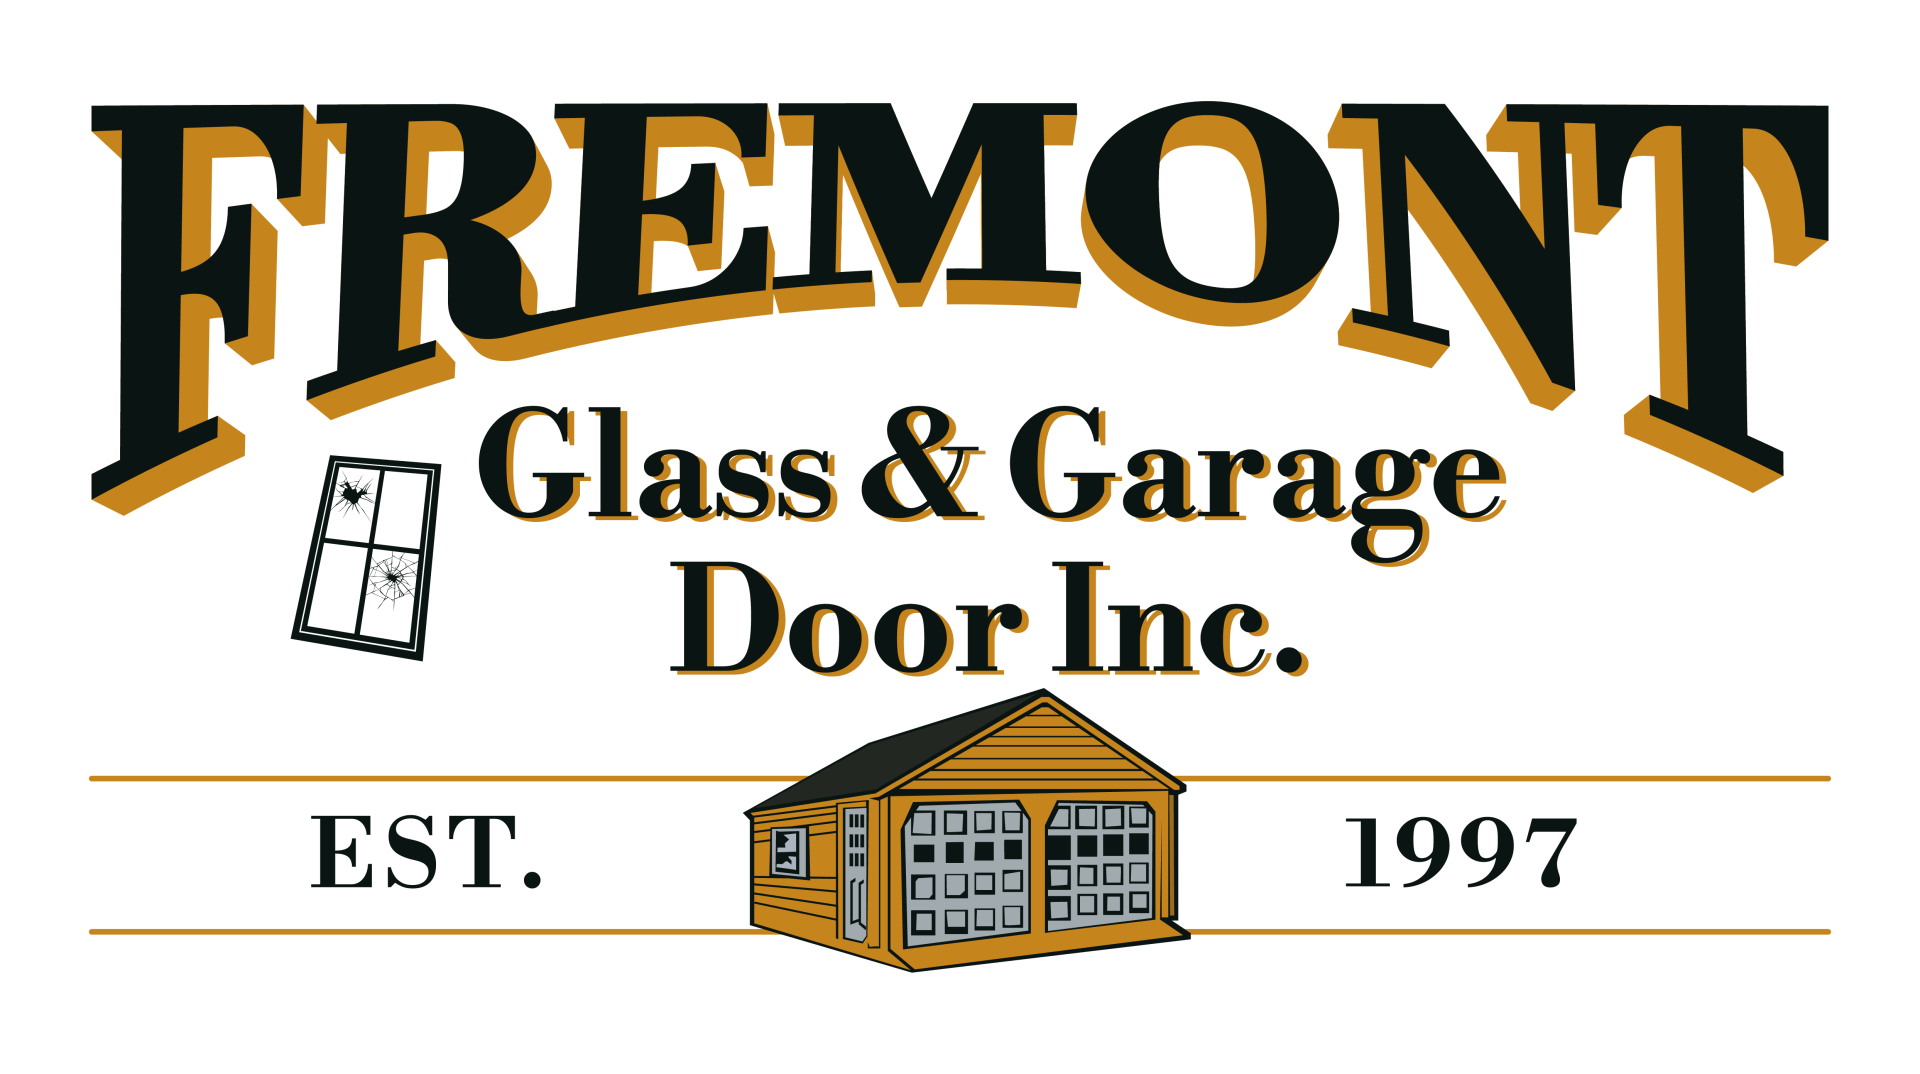 Fremont Glass & Garage door